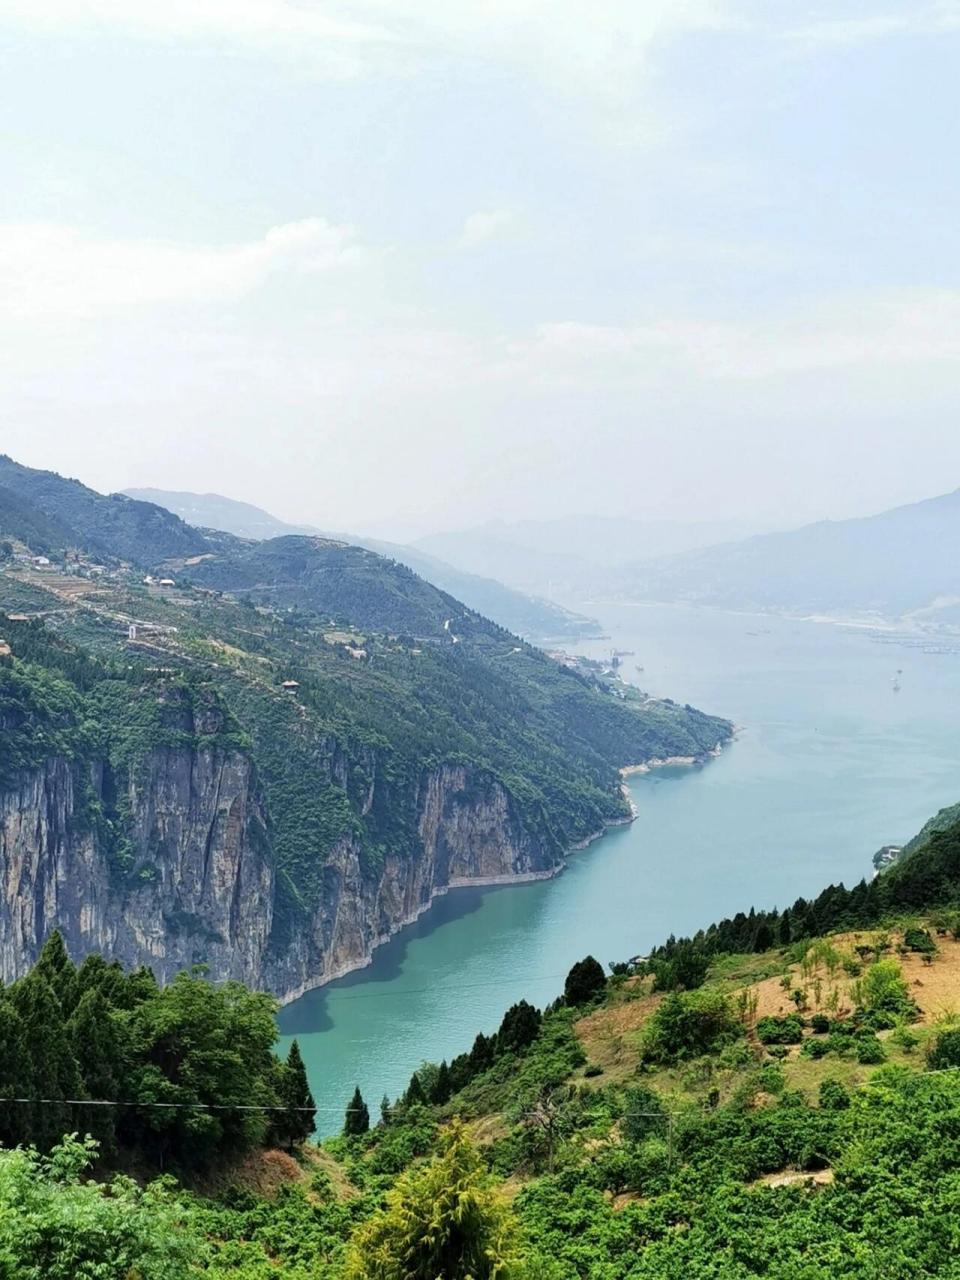 三峡之巅 三峡之巅风景区位于重庆市奉节县,地处长江三峡之首,因杜甫